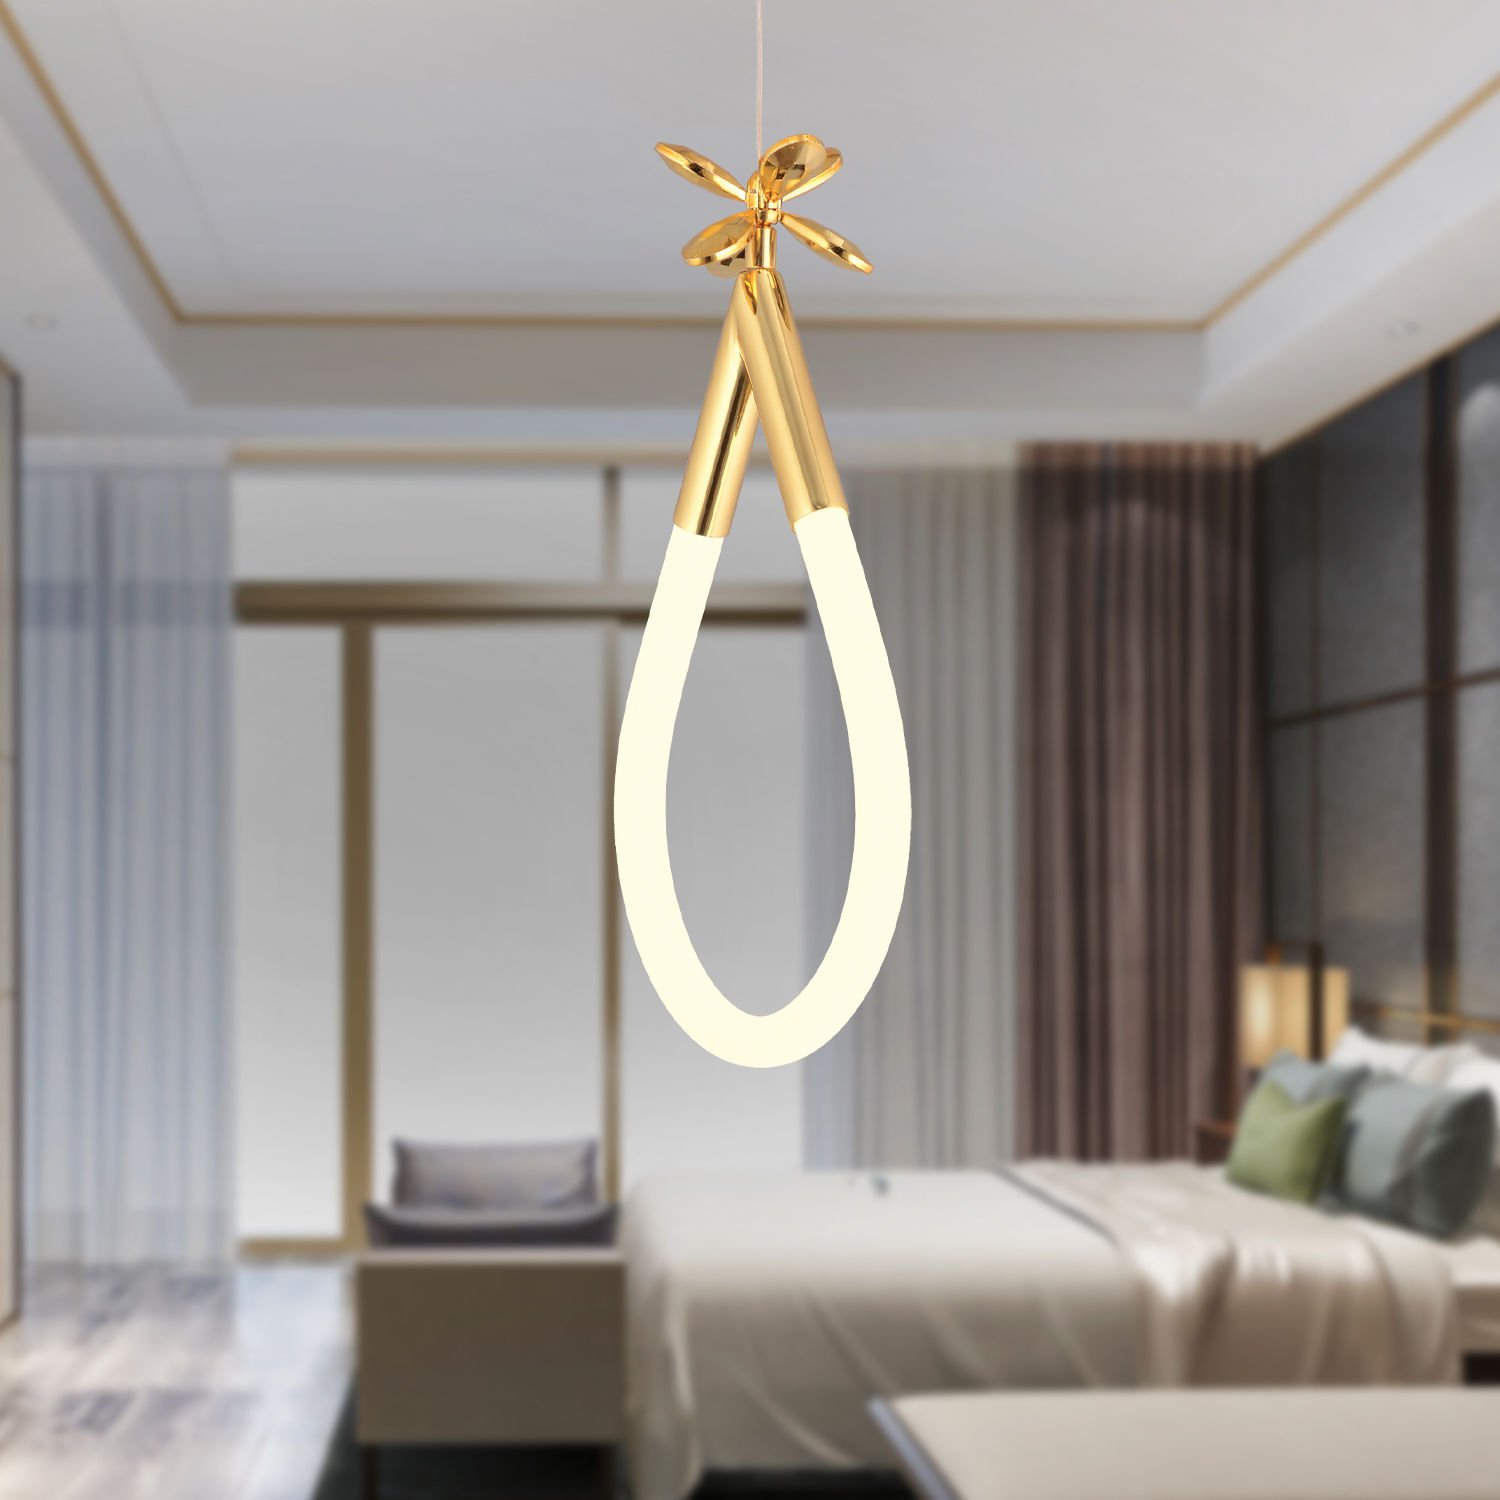 Vojens Tekli Gold Ledli 11 Watt Kelebek Detaylı Modern Koridor, Yatak Odası Salon Sarkıt Led Avize